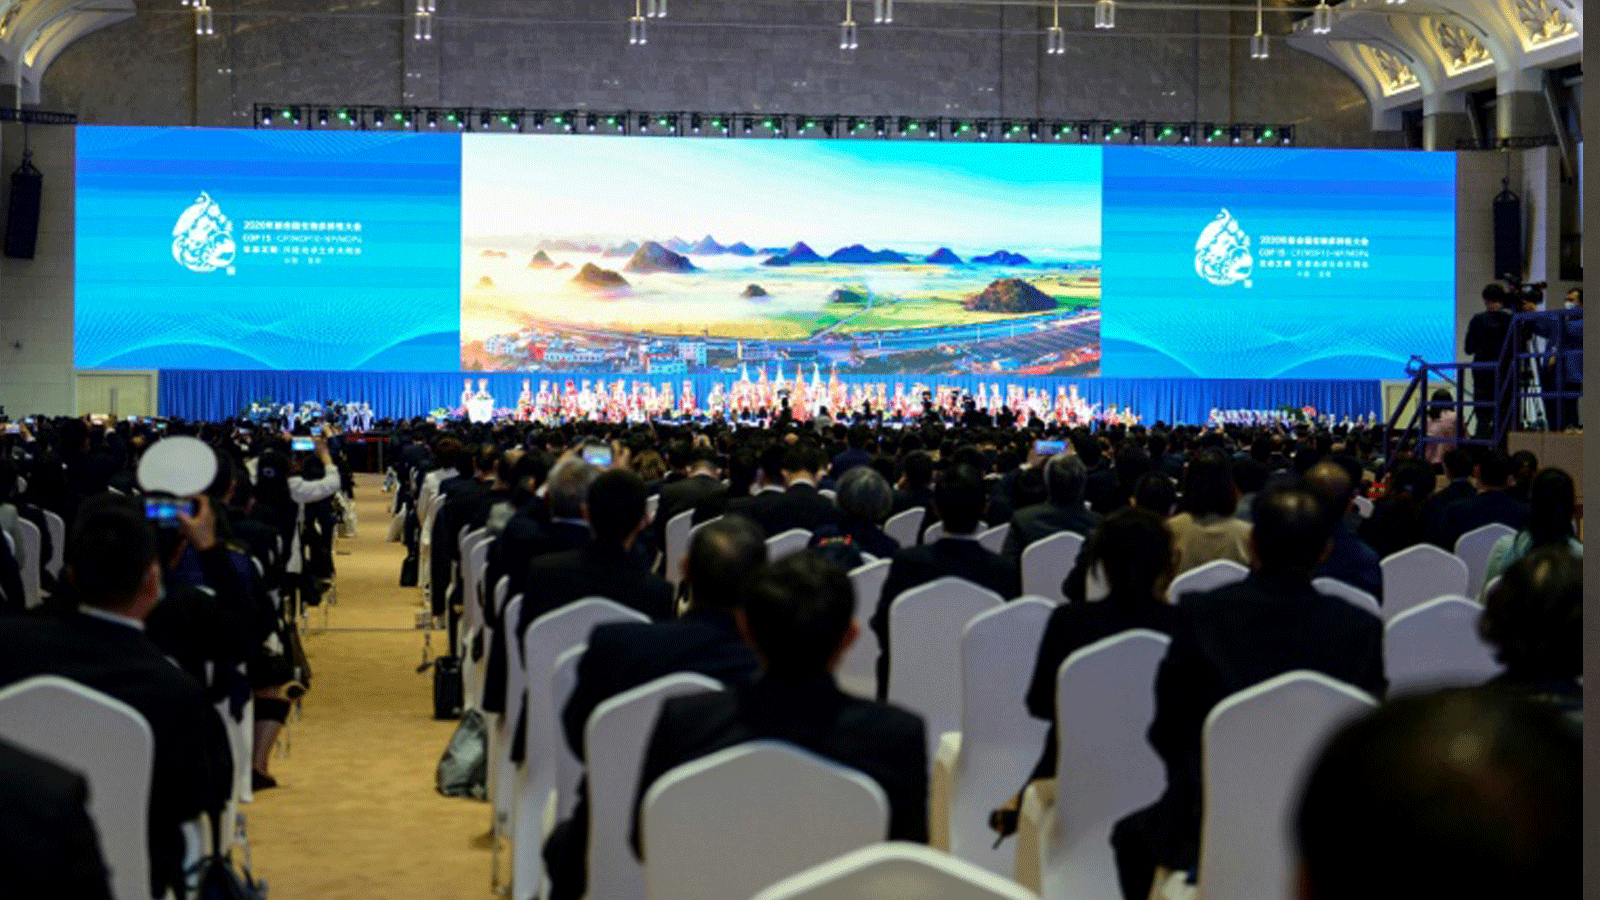 المشاركون في قمة COP15 حول التنوع البيولوجي. 11تشرين الأول/ أكتوبر 2021 في كونمينغ، الصين